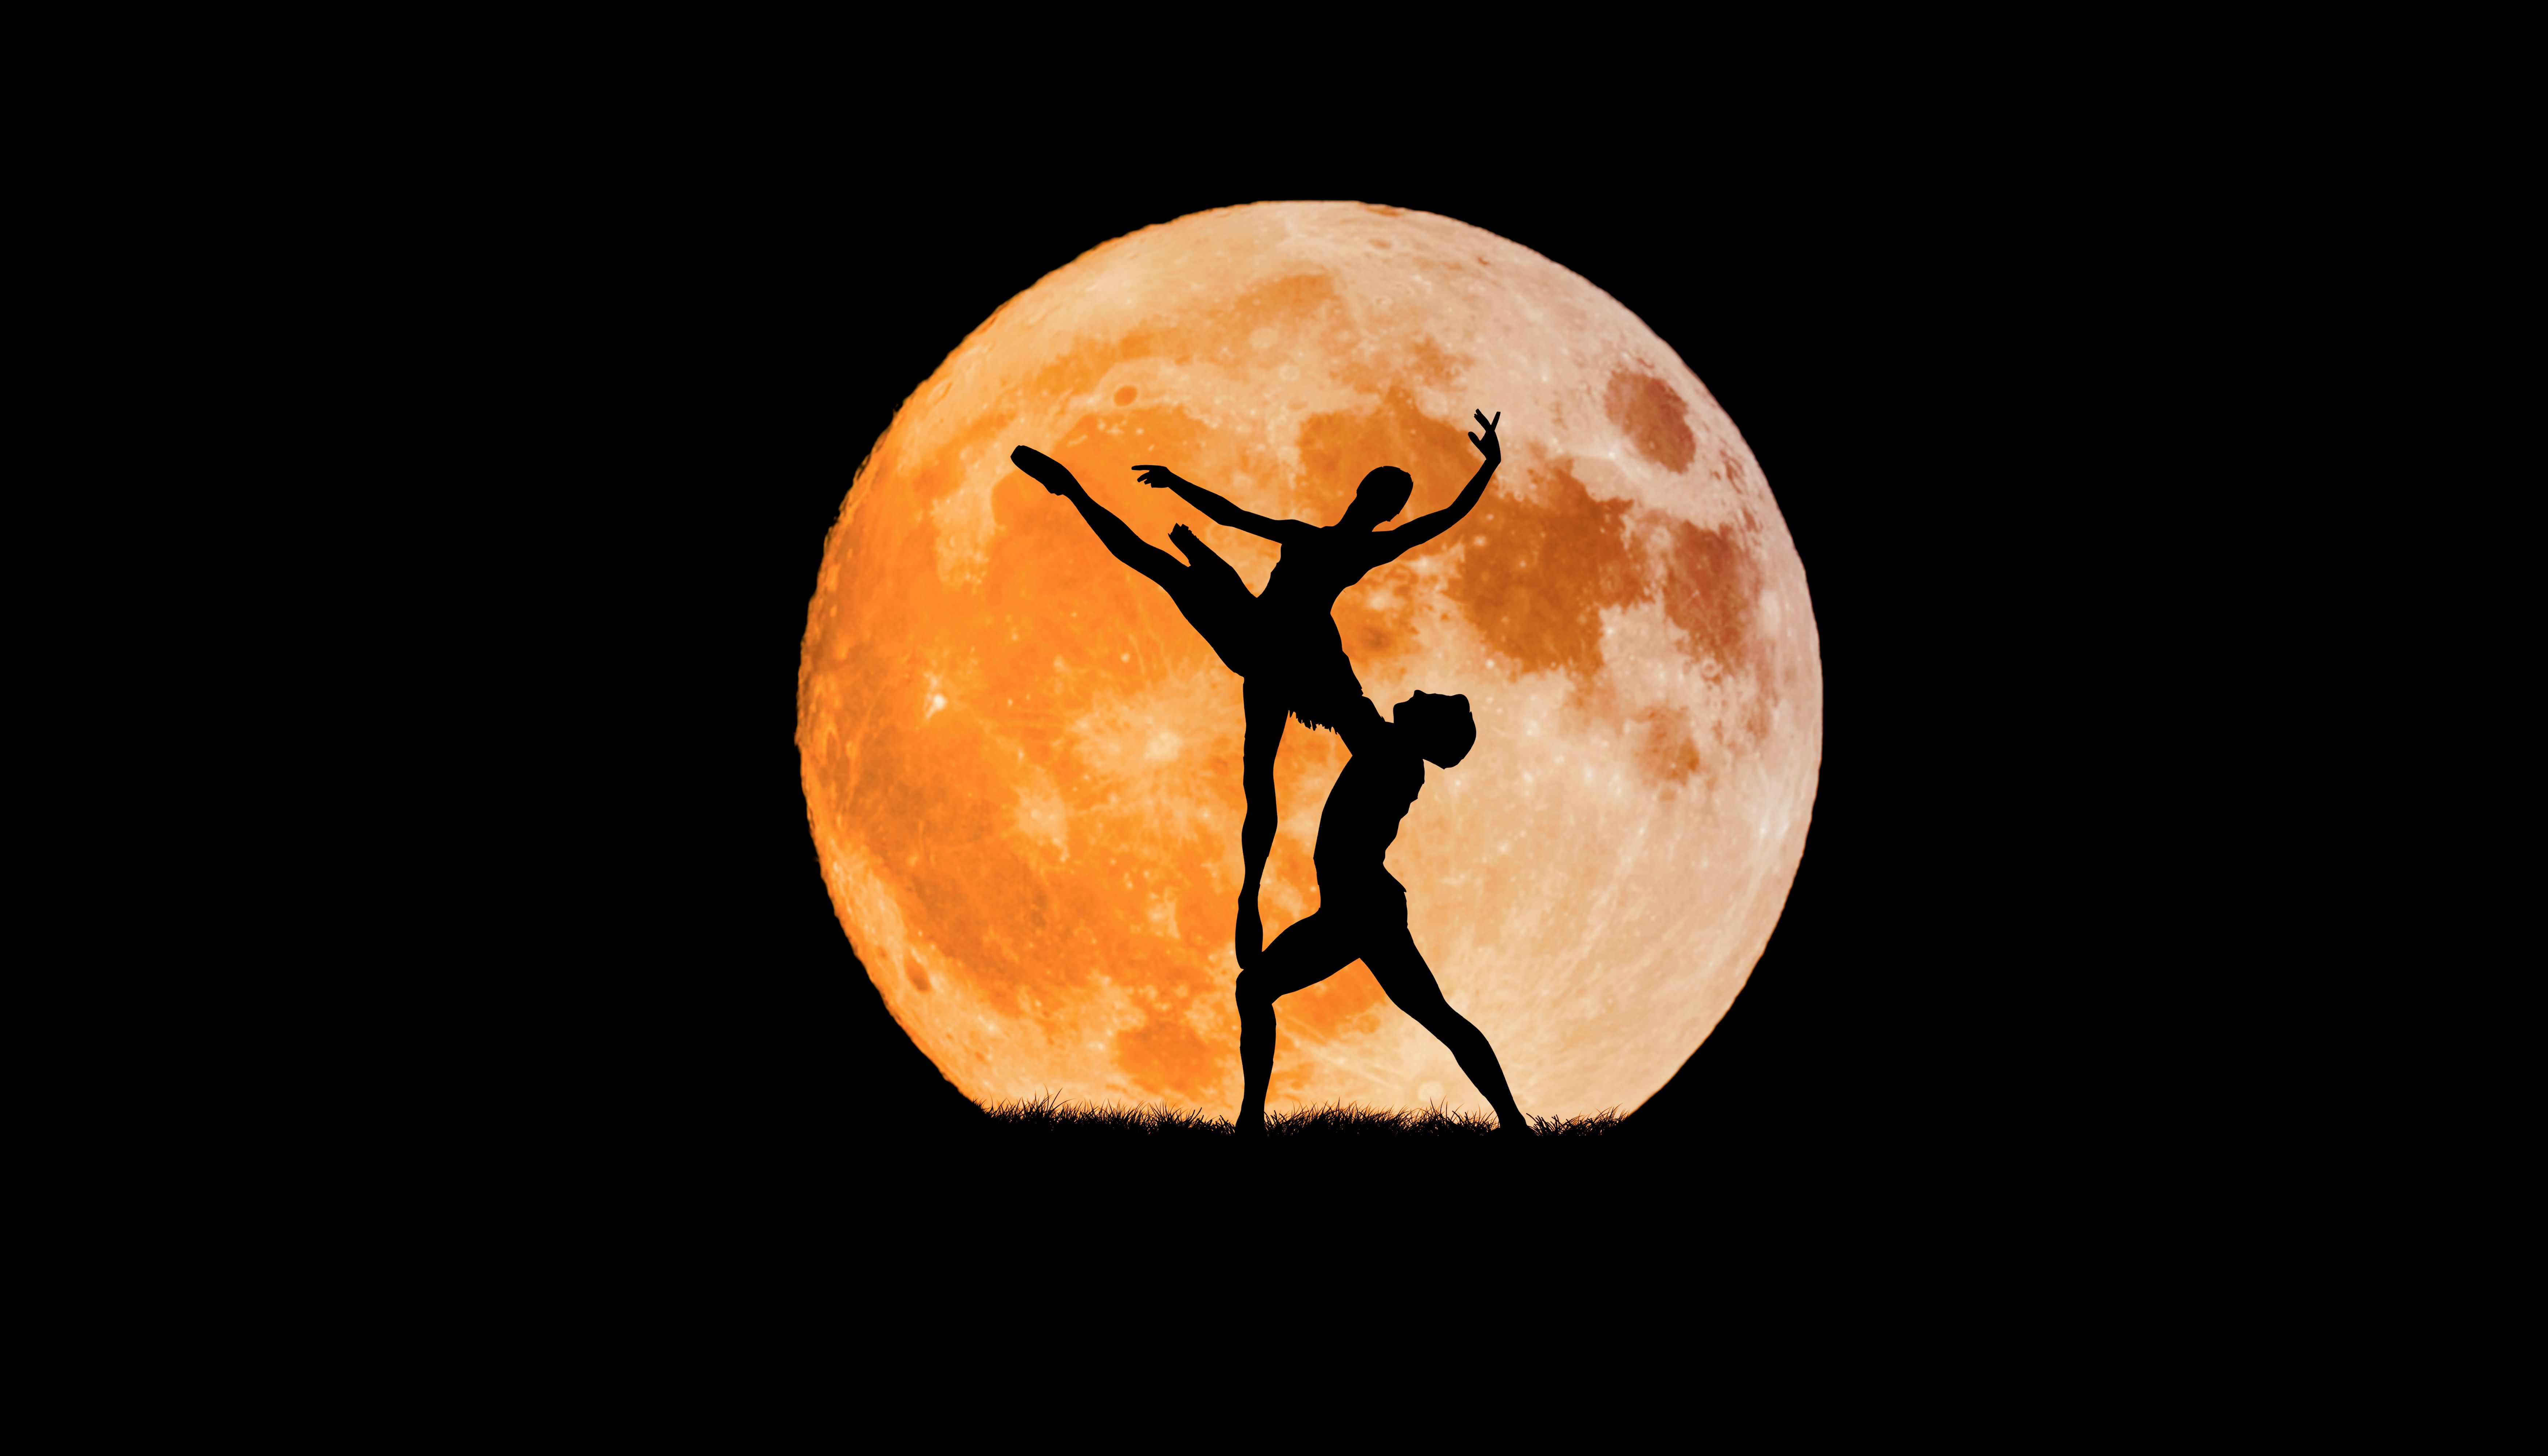 Couple 4K Wallpaper, Ballet Dancers, Full Moon, Silhouette, Black Background, Dancing, 5K, 8K, Black Dark